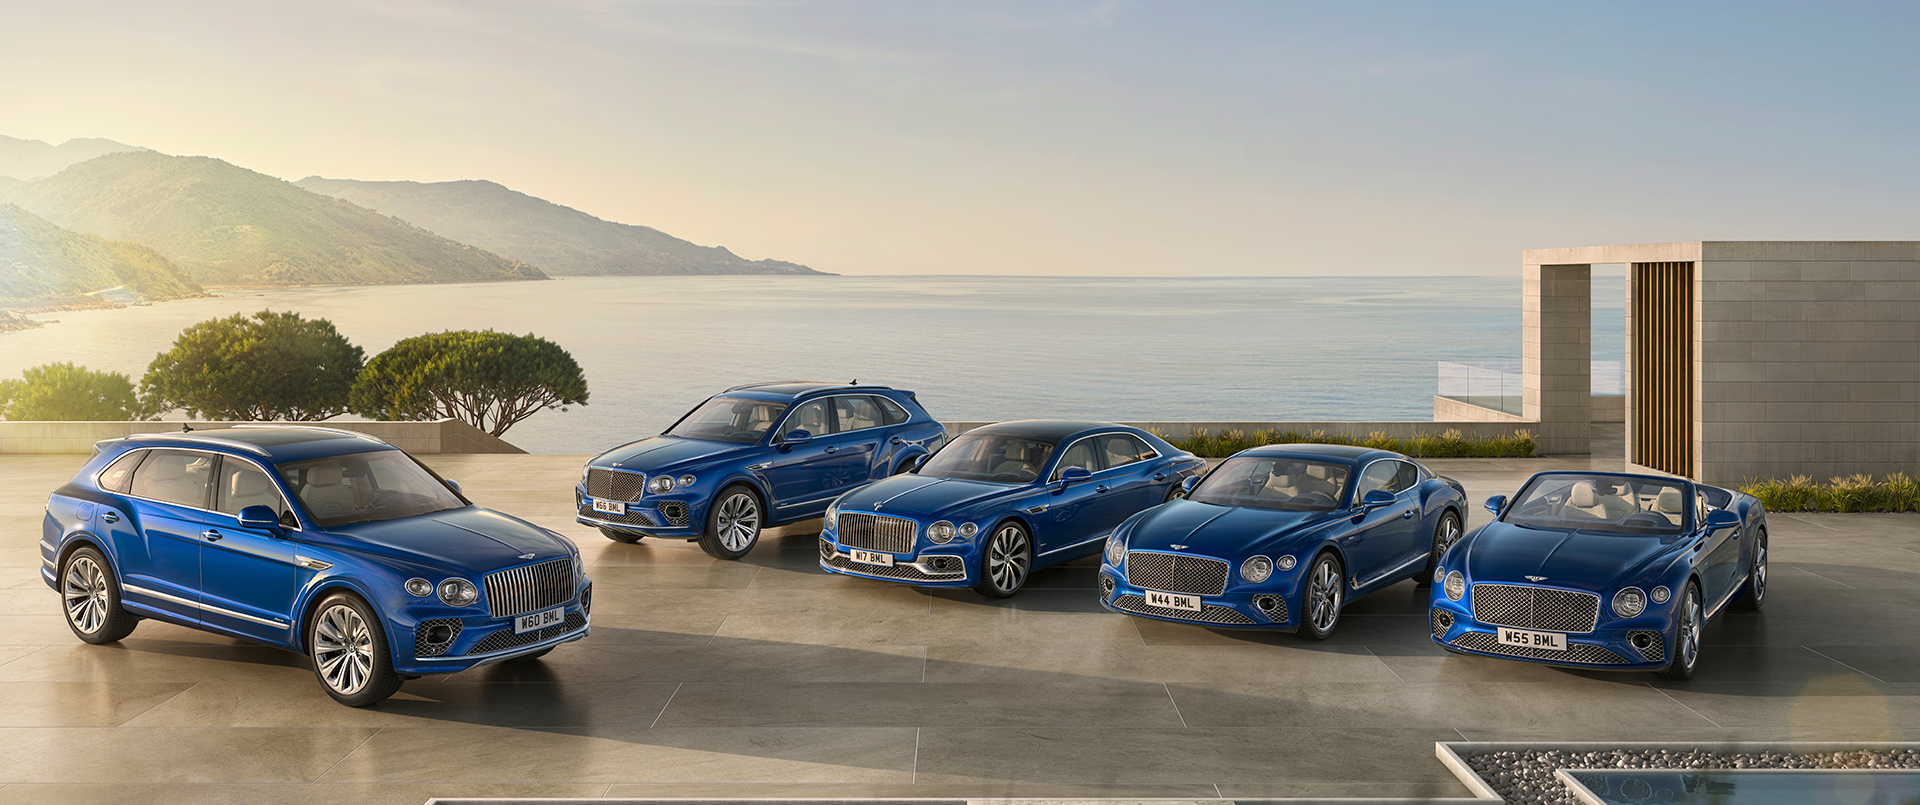 Bentley Motors Website: World of Bentley: News: 2022 News: Wellbeing behind  the wheel - the new Bentley Azure range